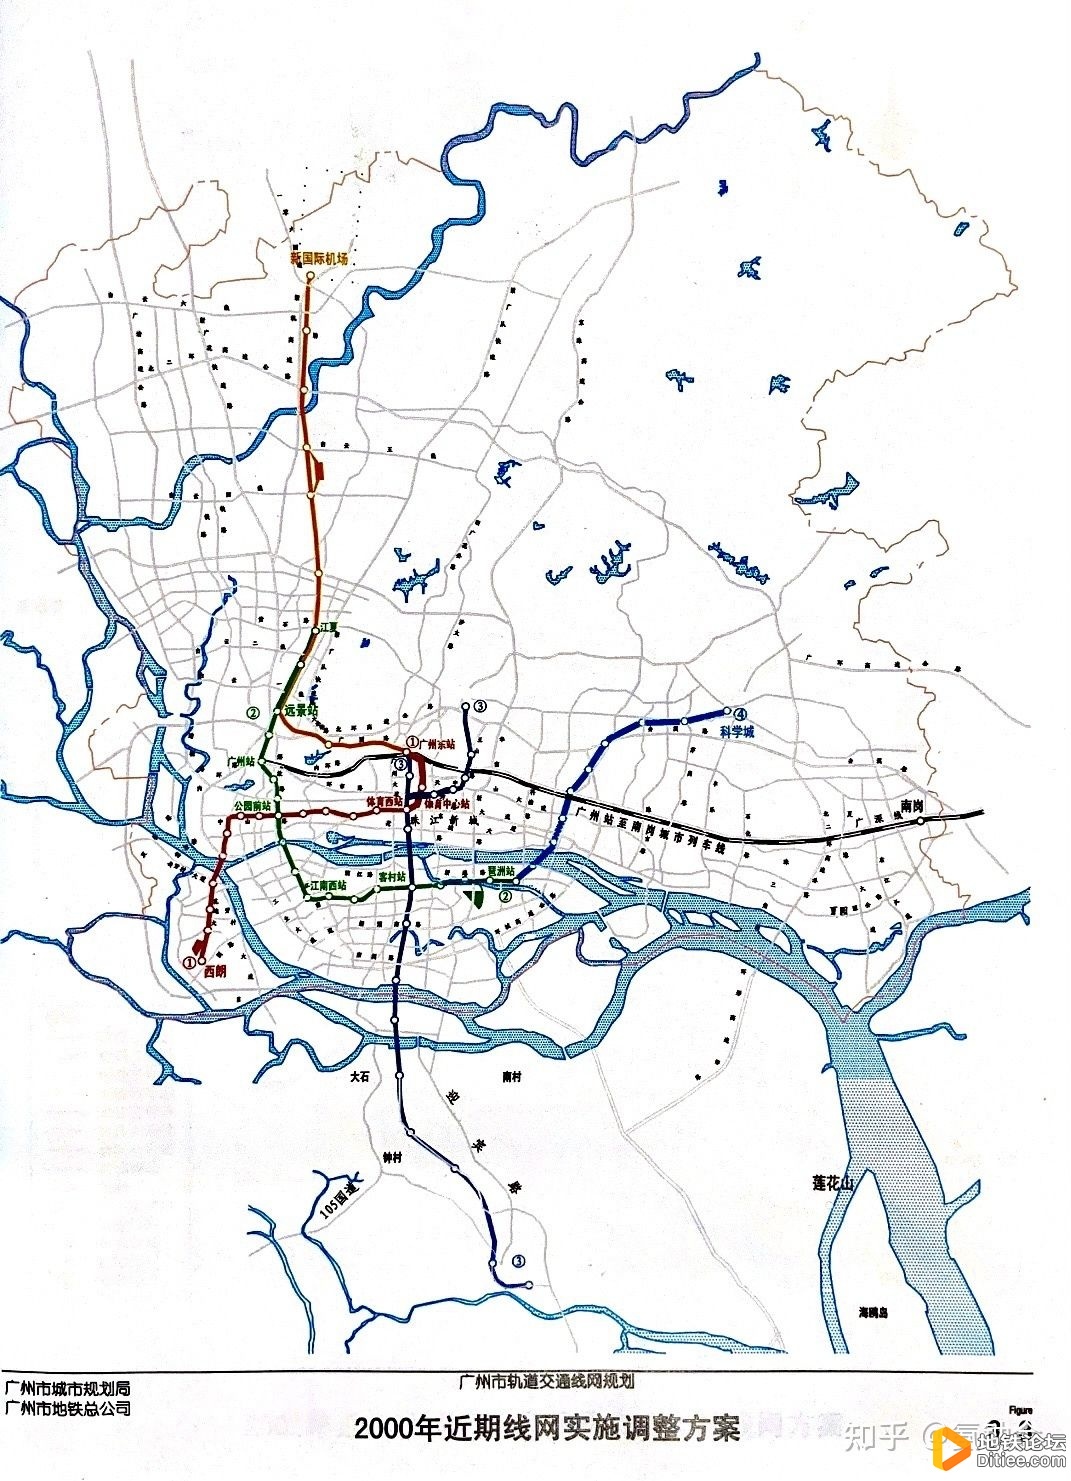 试谈广州地铁3号线的规划发展历程（下）